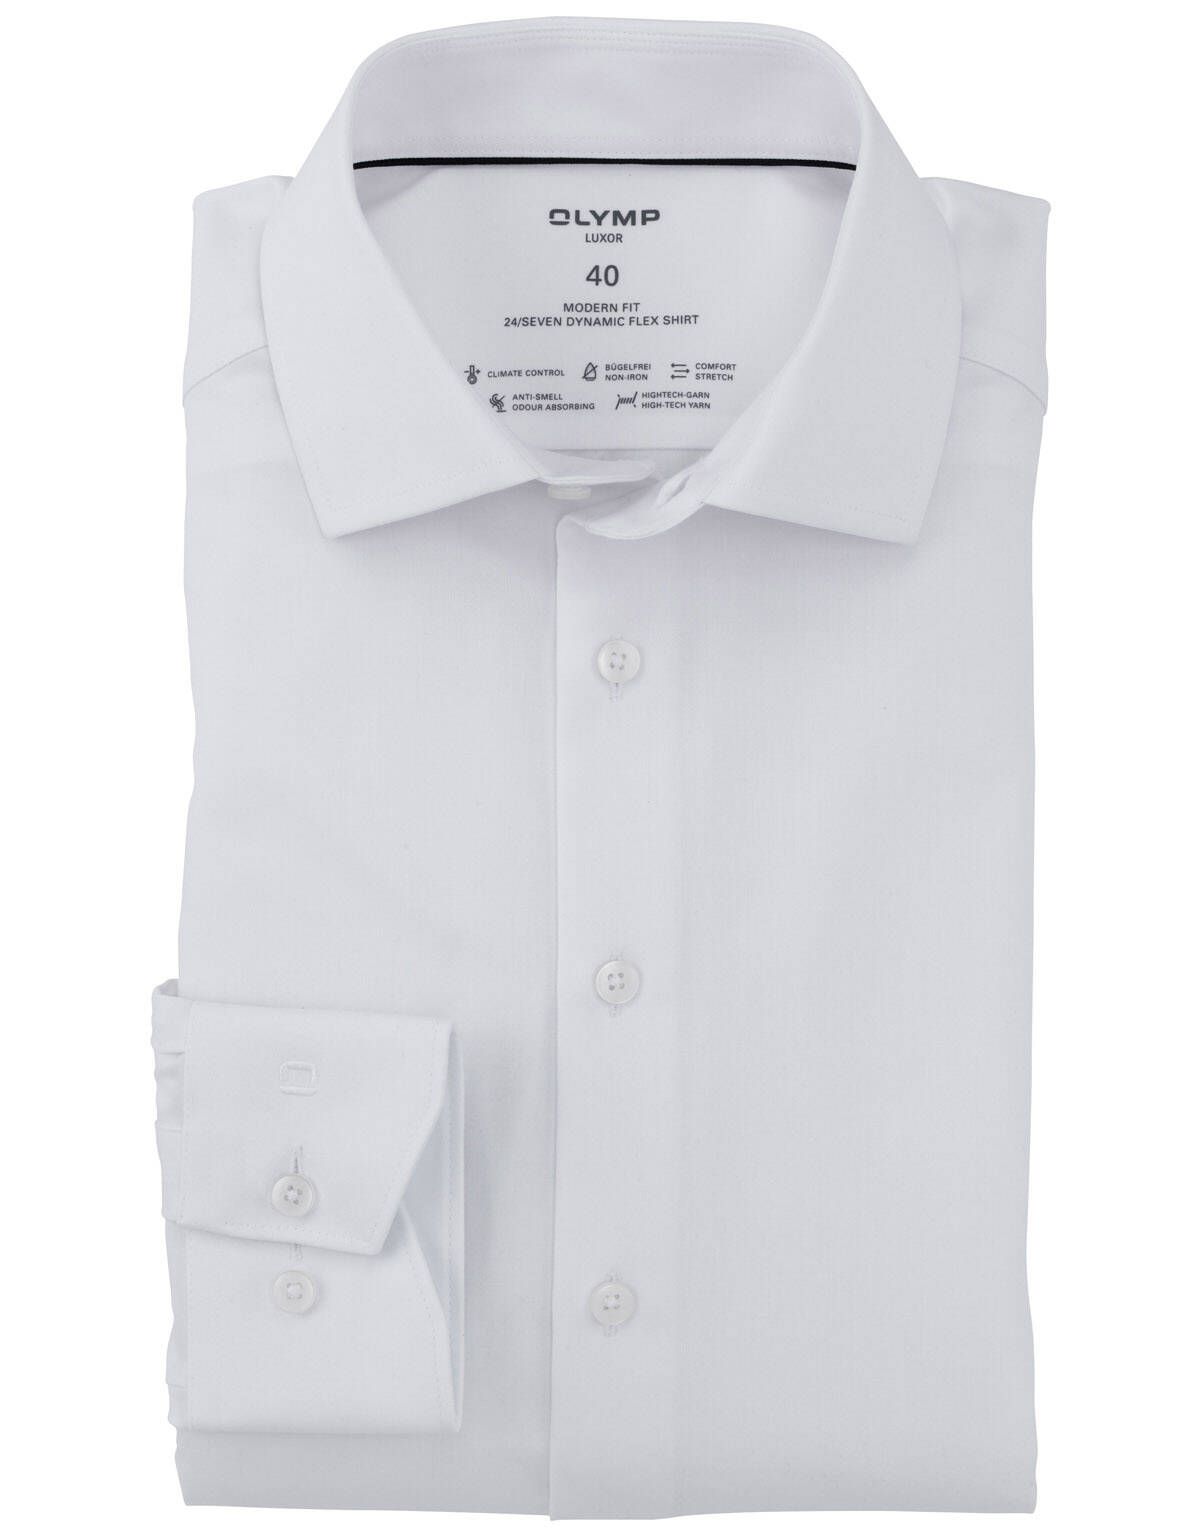 Рубашка мужская OLYMP Luxor 24/7, modern fit